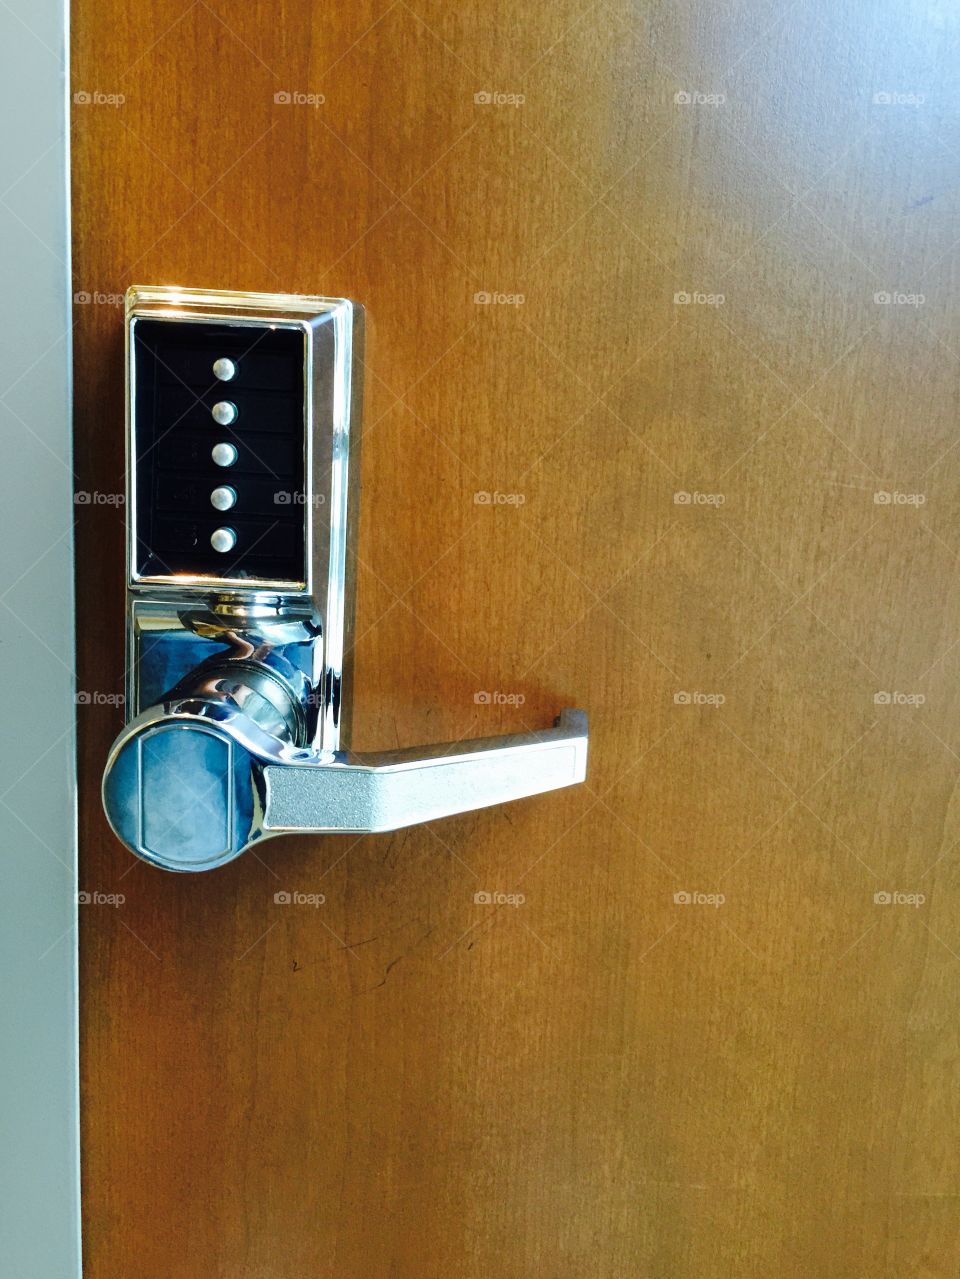 Door handle with security pad